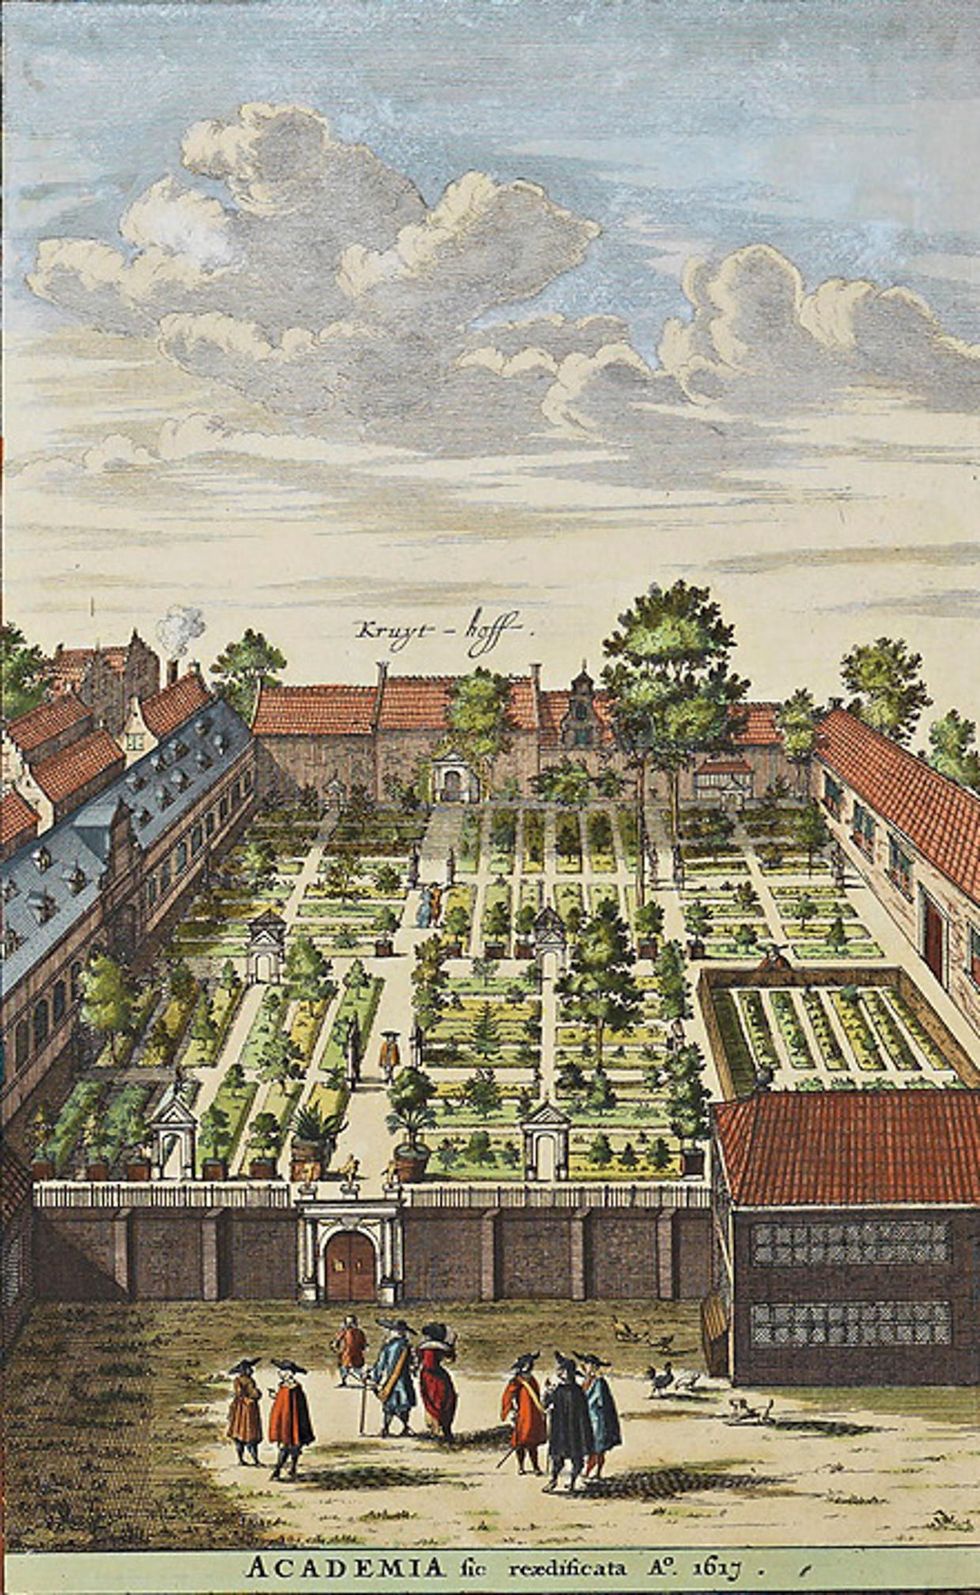 De Kruythoff van de Leidse universiteit werd in 1590 gesticht door Carolus Clusius Boerhaave breidde de collectie planten drastisch uit Hij steunde ook de zweedse botanicus Carl Linnaeus toen deze in Leiden werkte